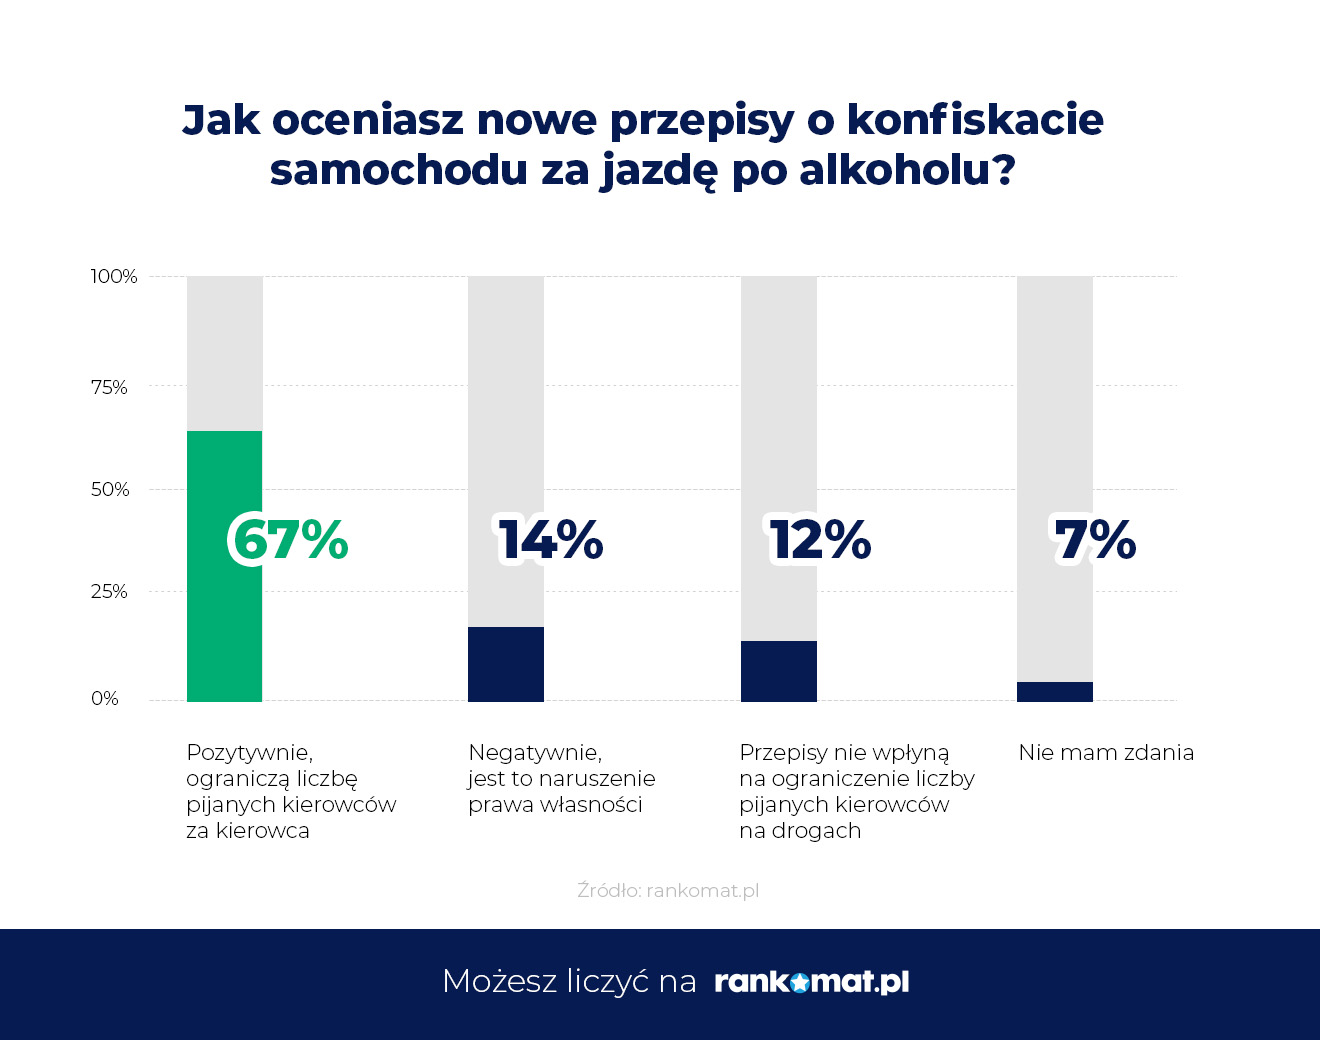 Polacy popierają zmianę w przepisach drogowych – 67% za konfiskatą auta w przypadku jazdy po alkoholu